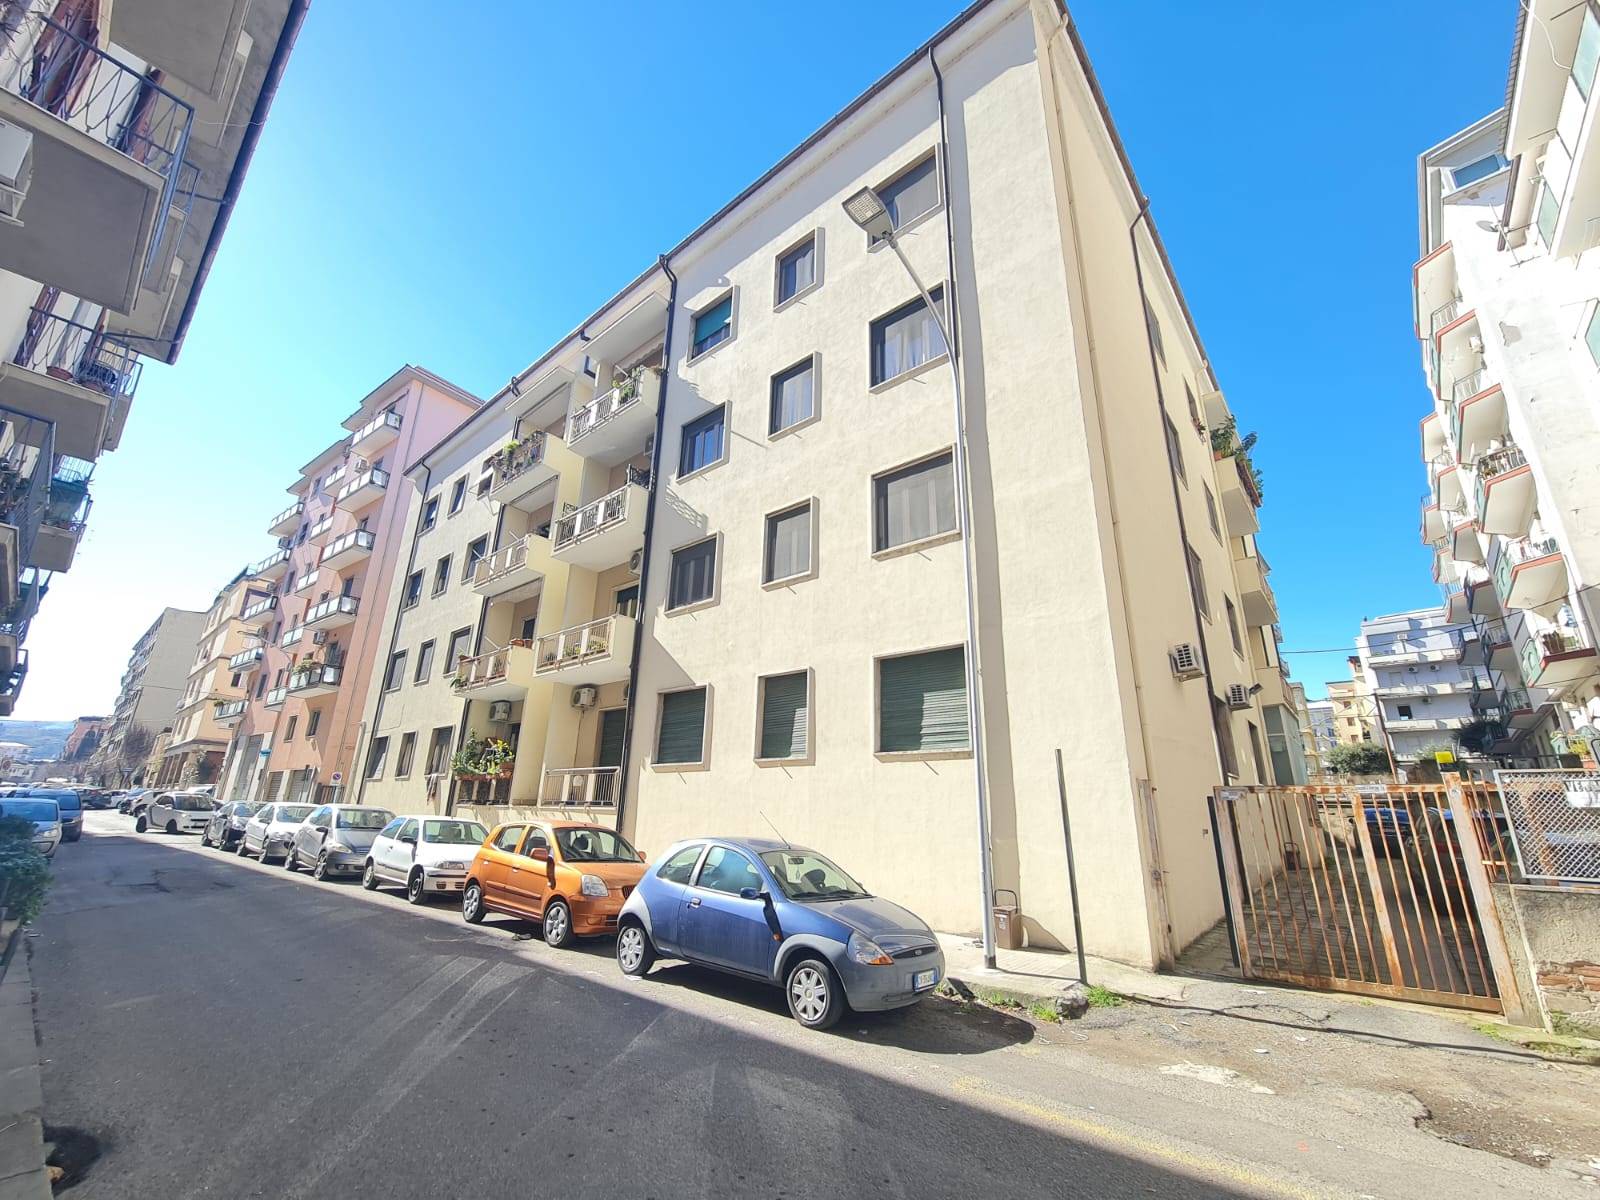 Appartamento in affitto a Cosenza, 4 locali, zona Località: PIAZZA BILOTTI, prezzo € 600 | PortaleAgenzieImmobiliari.it